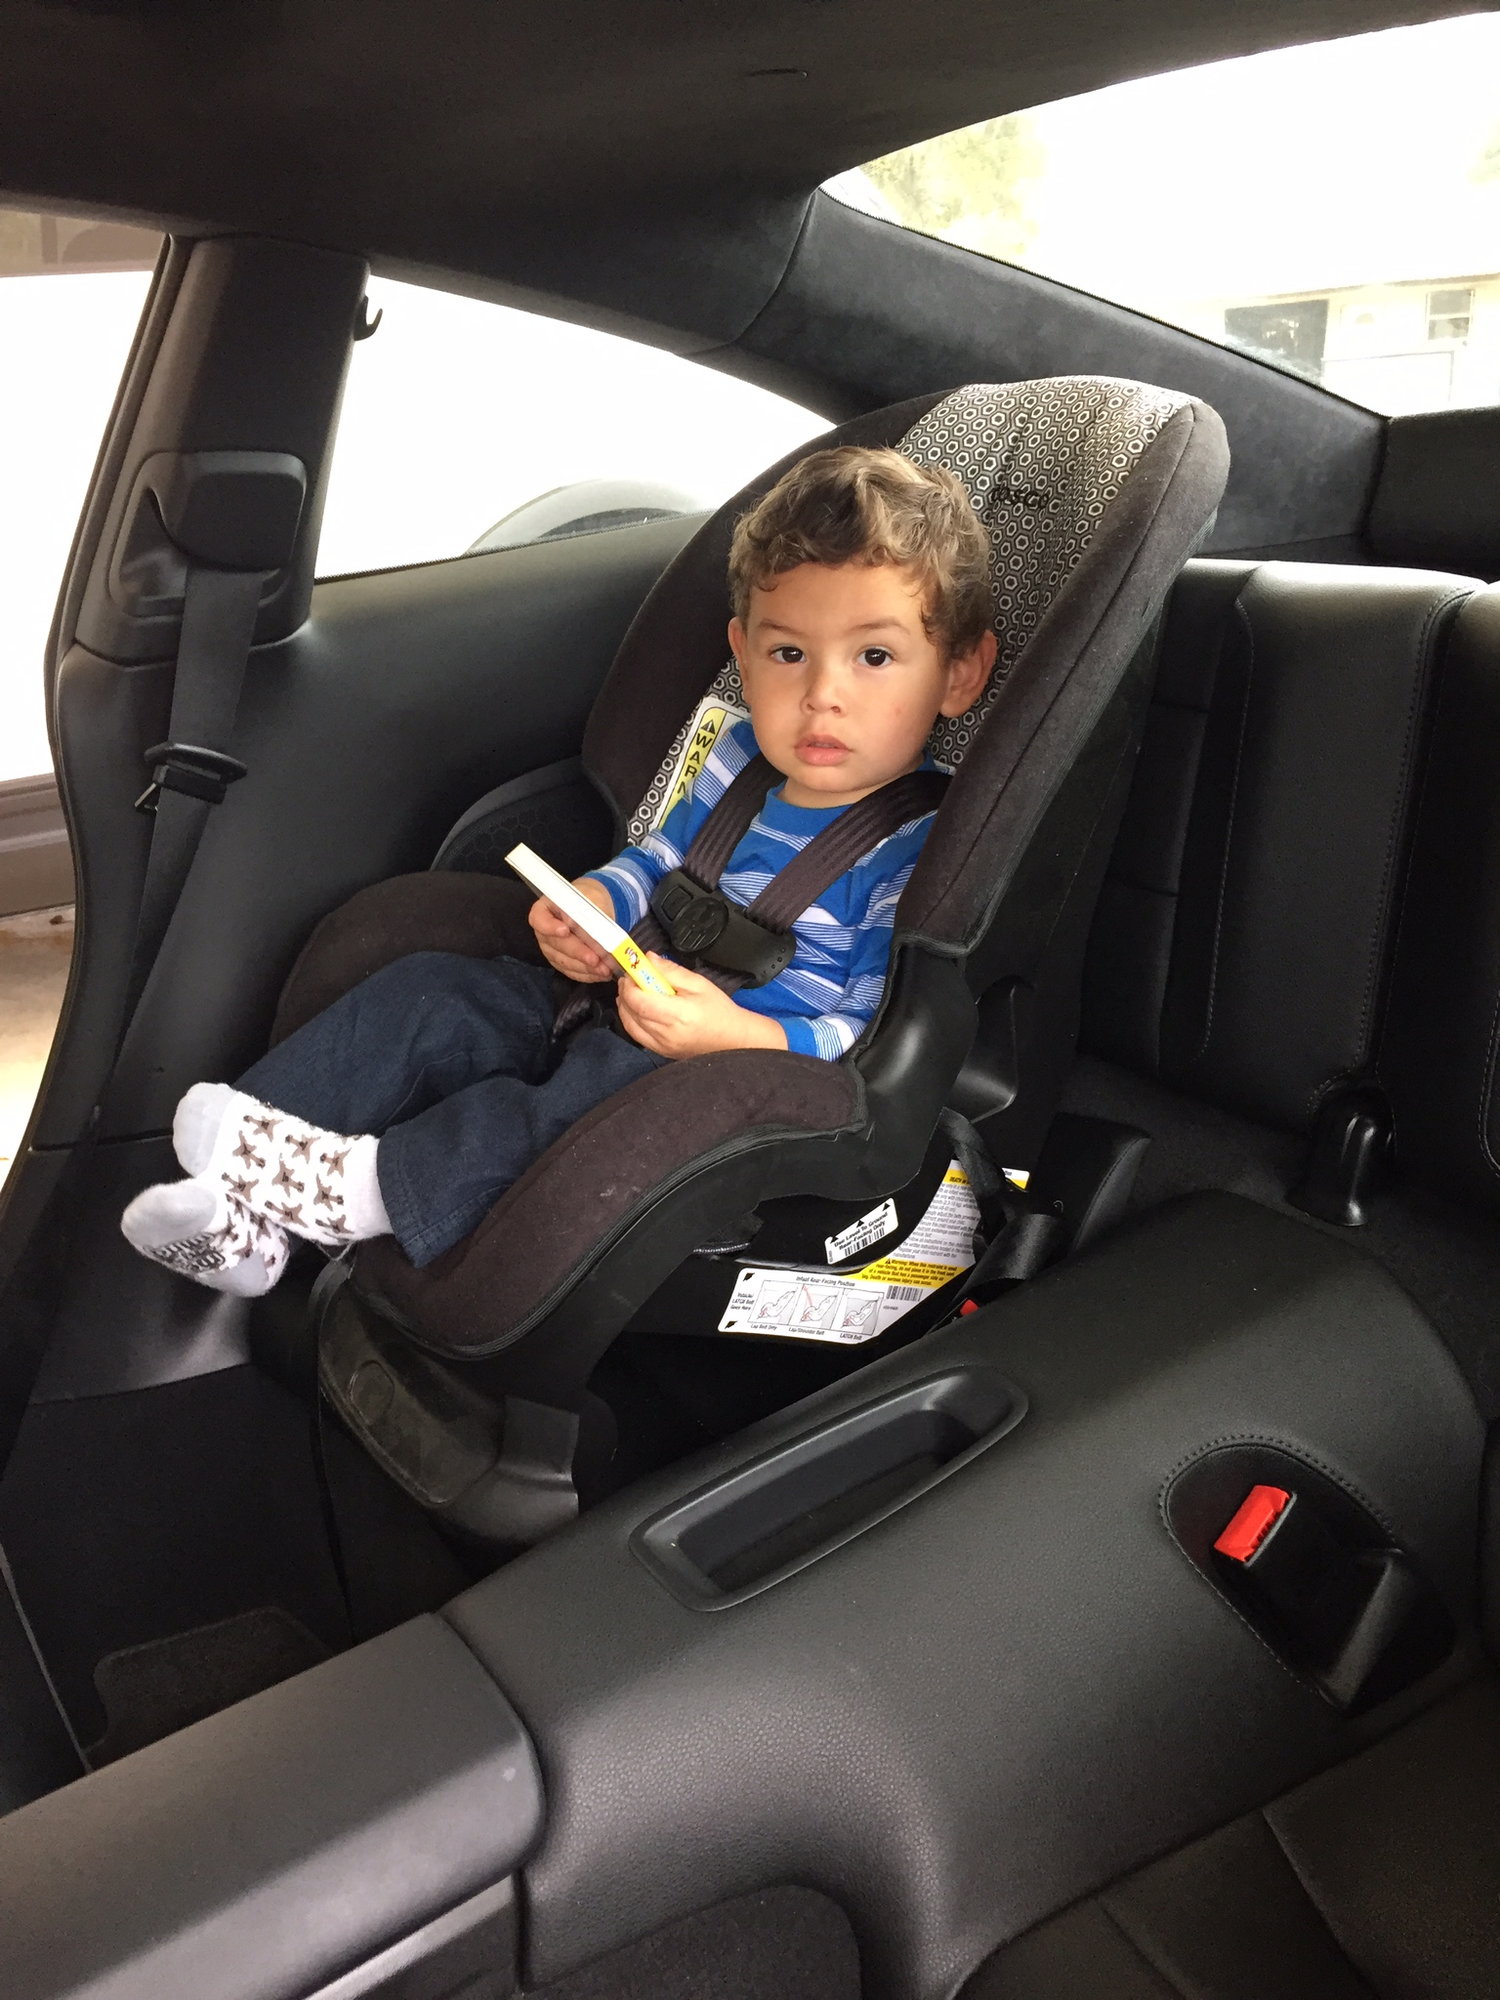 991 child/infant seats Page 3 Rennlist Porsche Discussion Forums